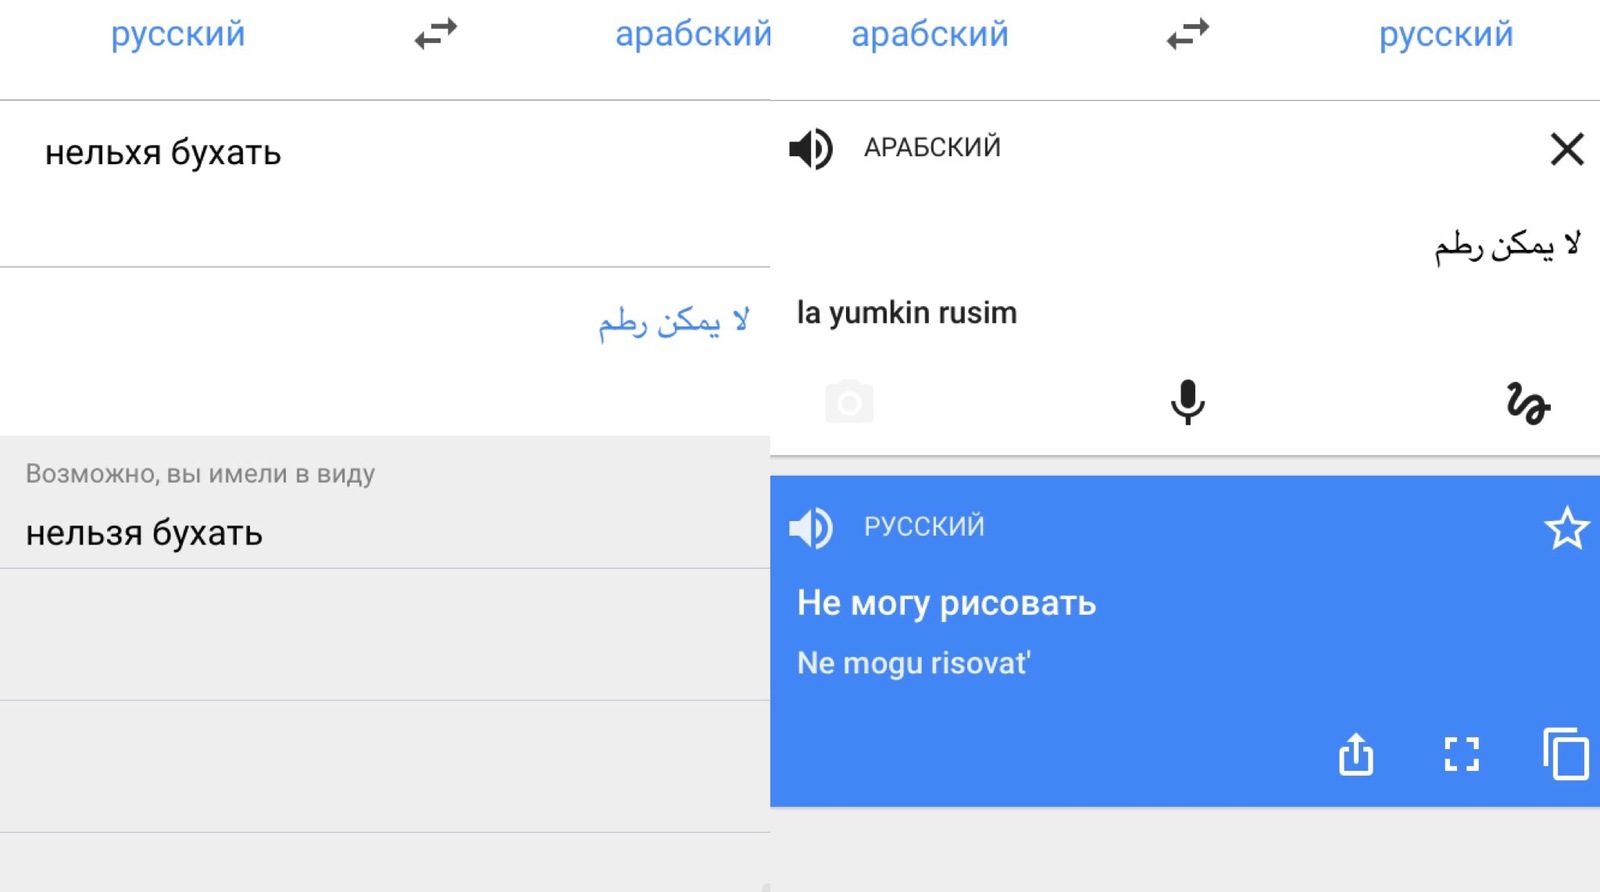 переводчик с арабского на русский по фотографии